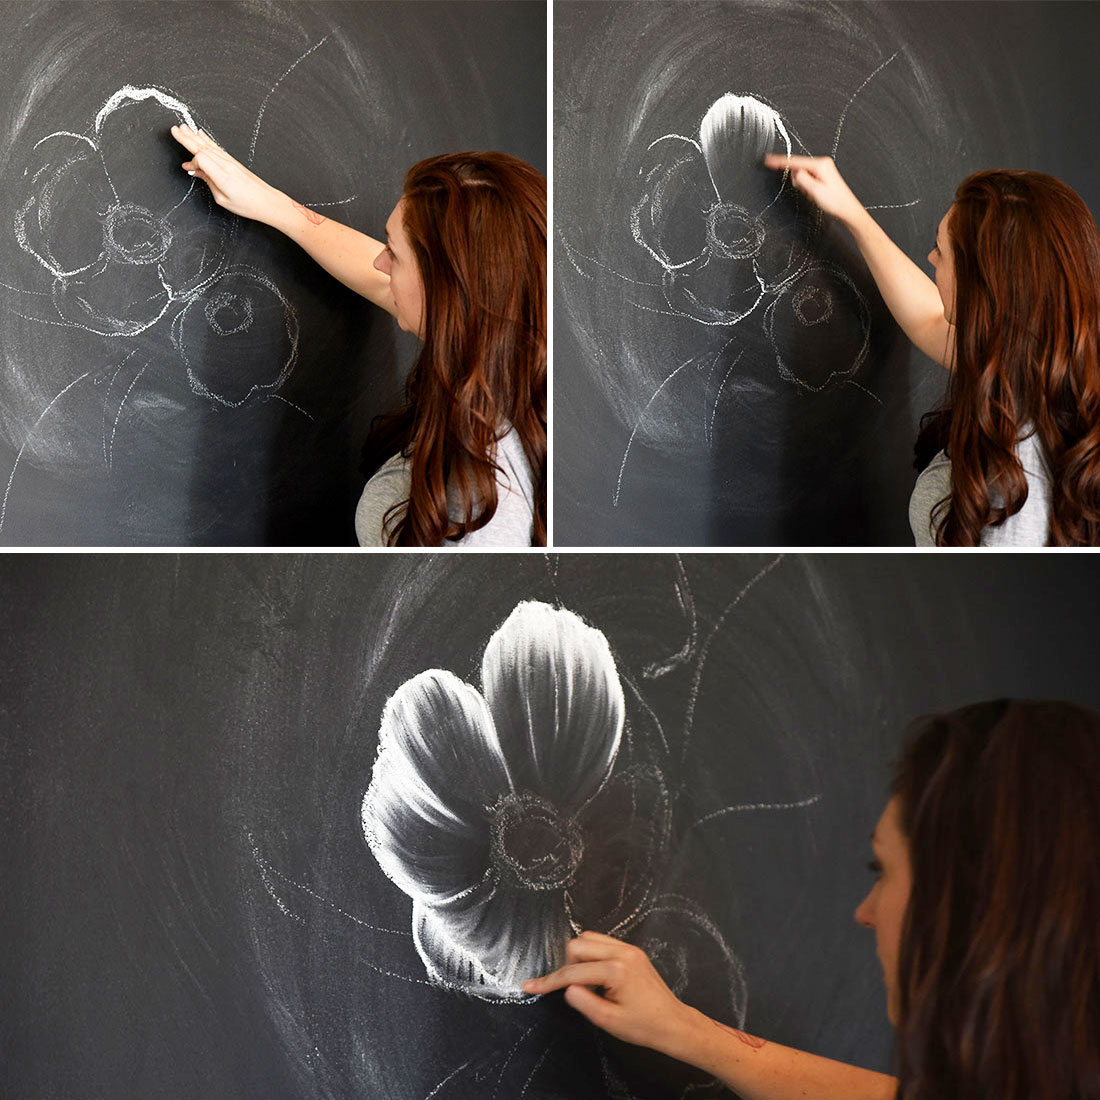 粉笔画|超全粉笔画素材,让你学会在黑板上变魔术!